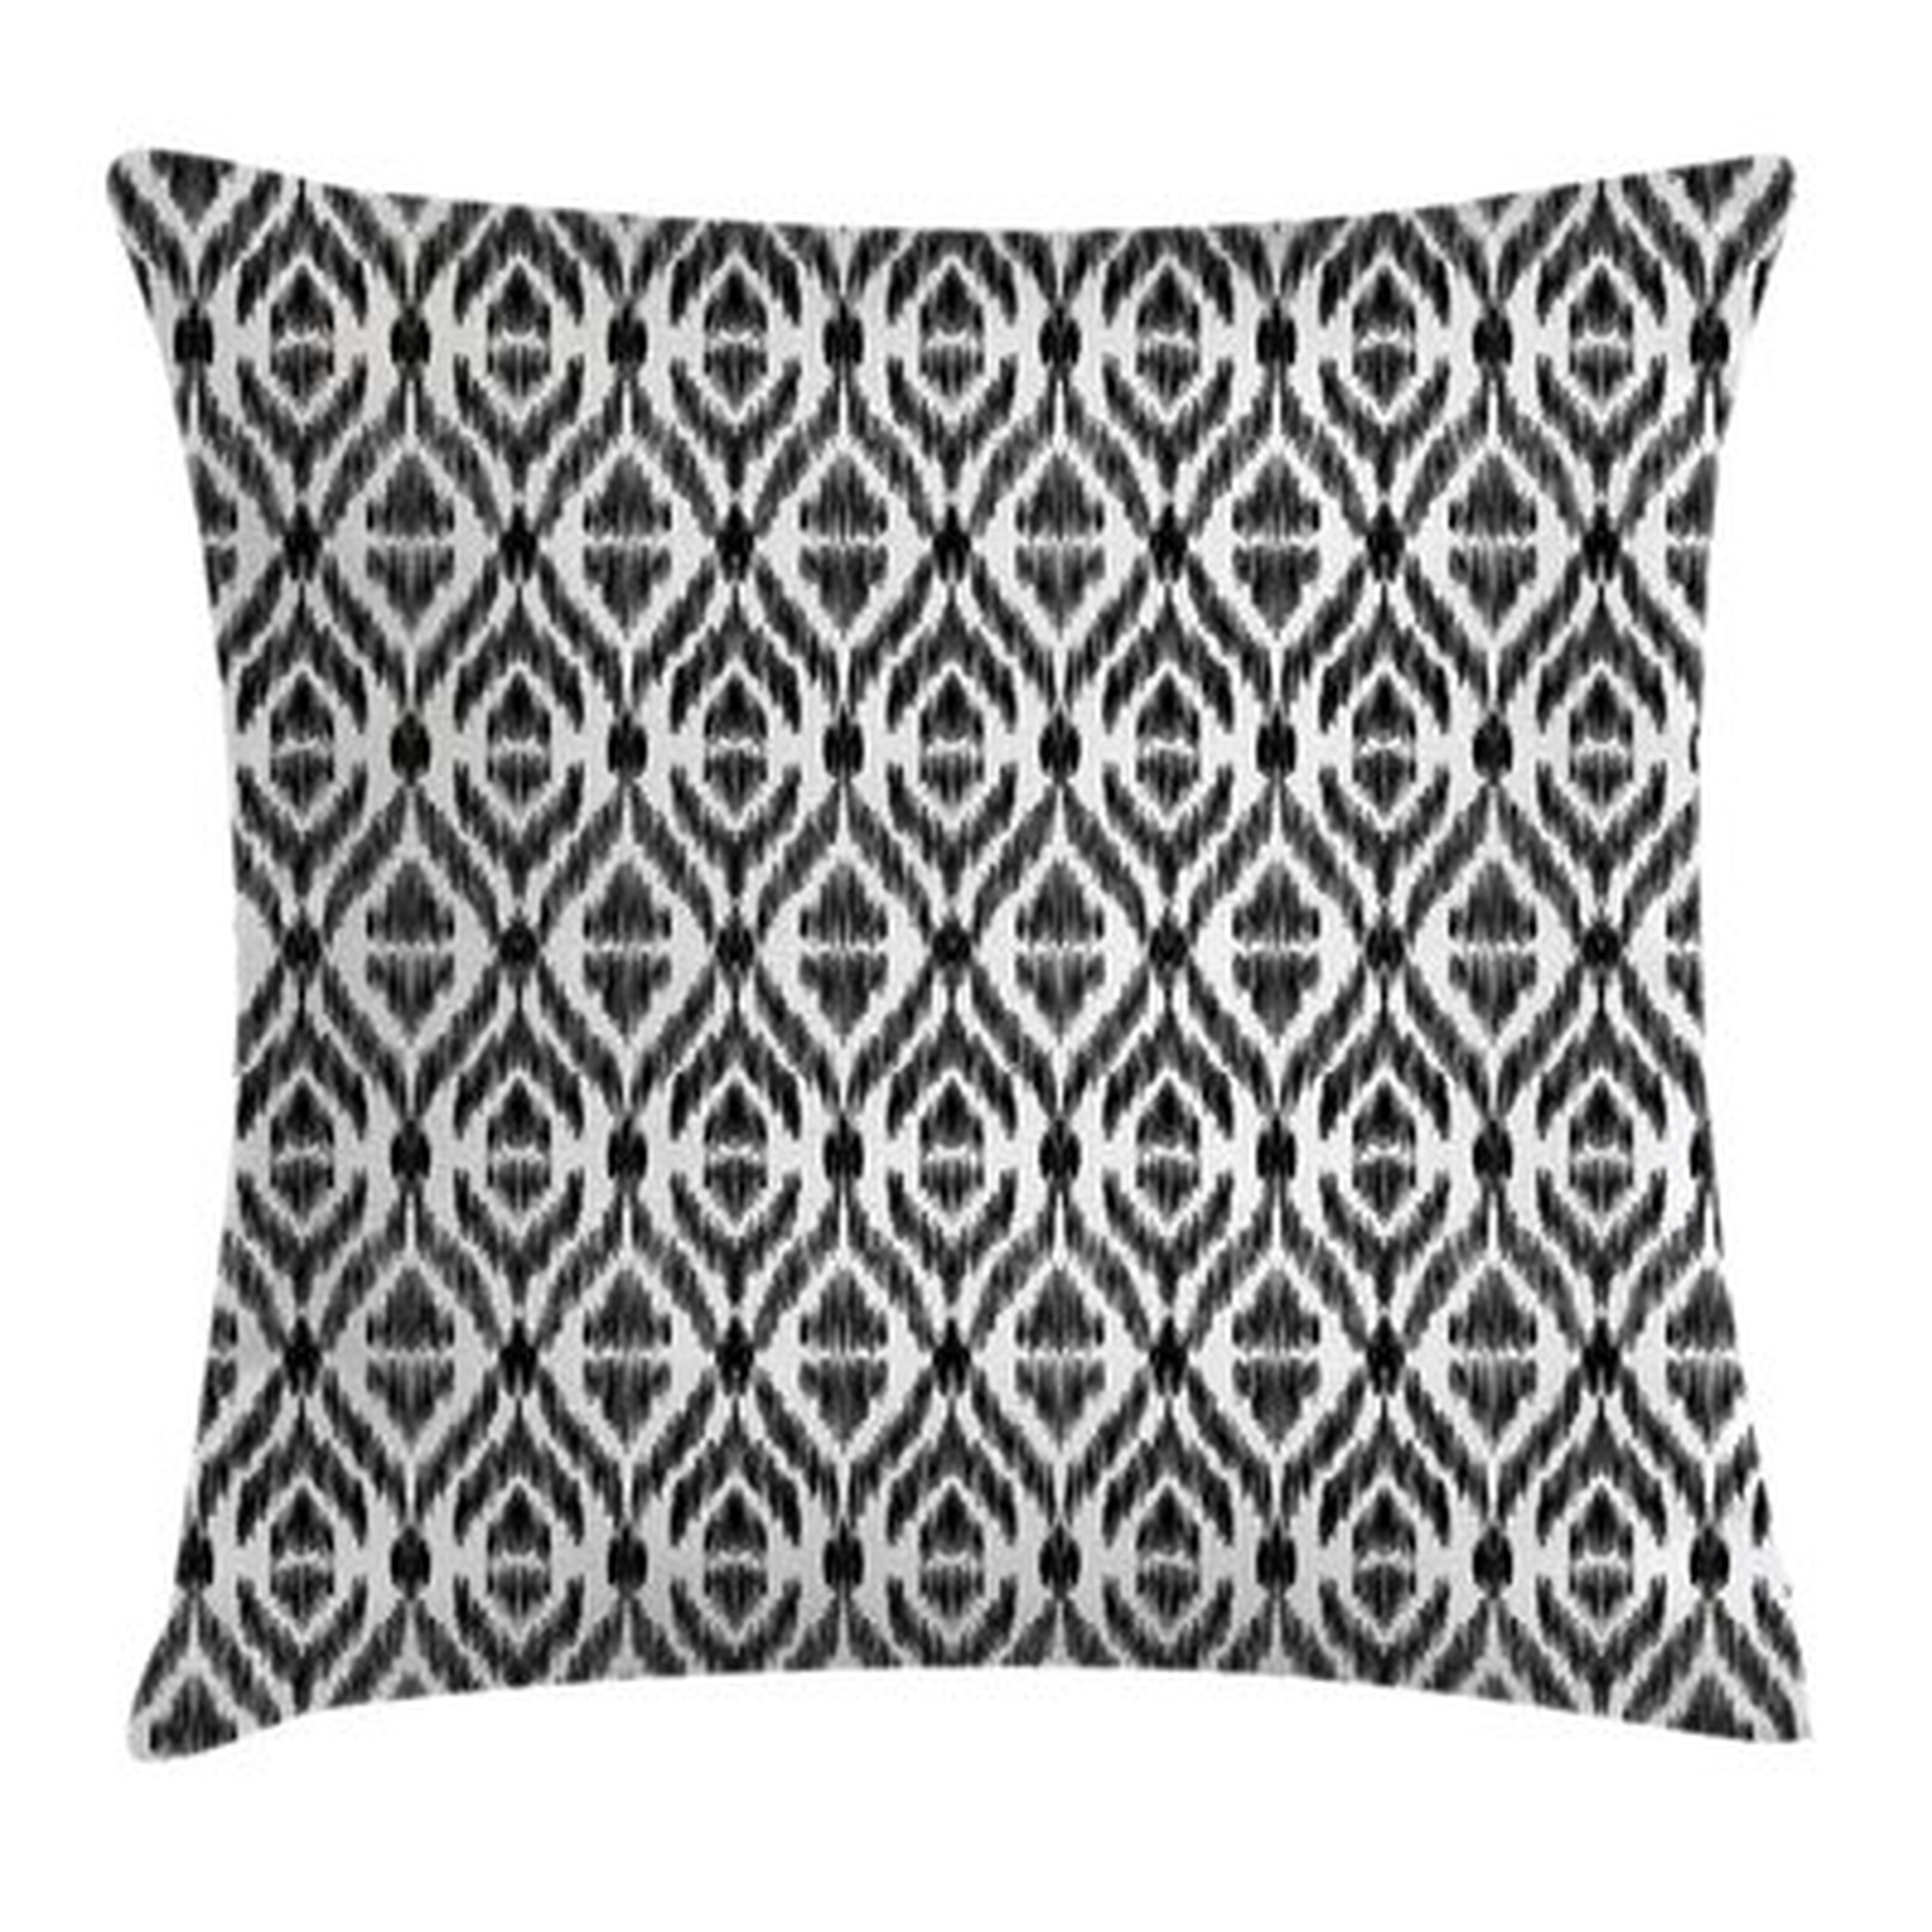 Tribal Sketchy Seem Rectangular Pillow Cover - Wayfair